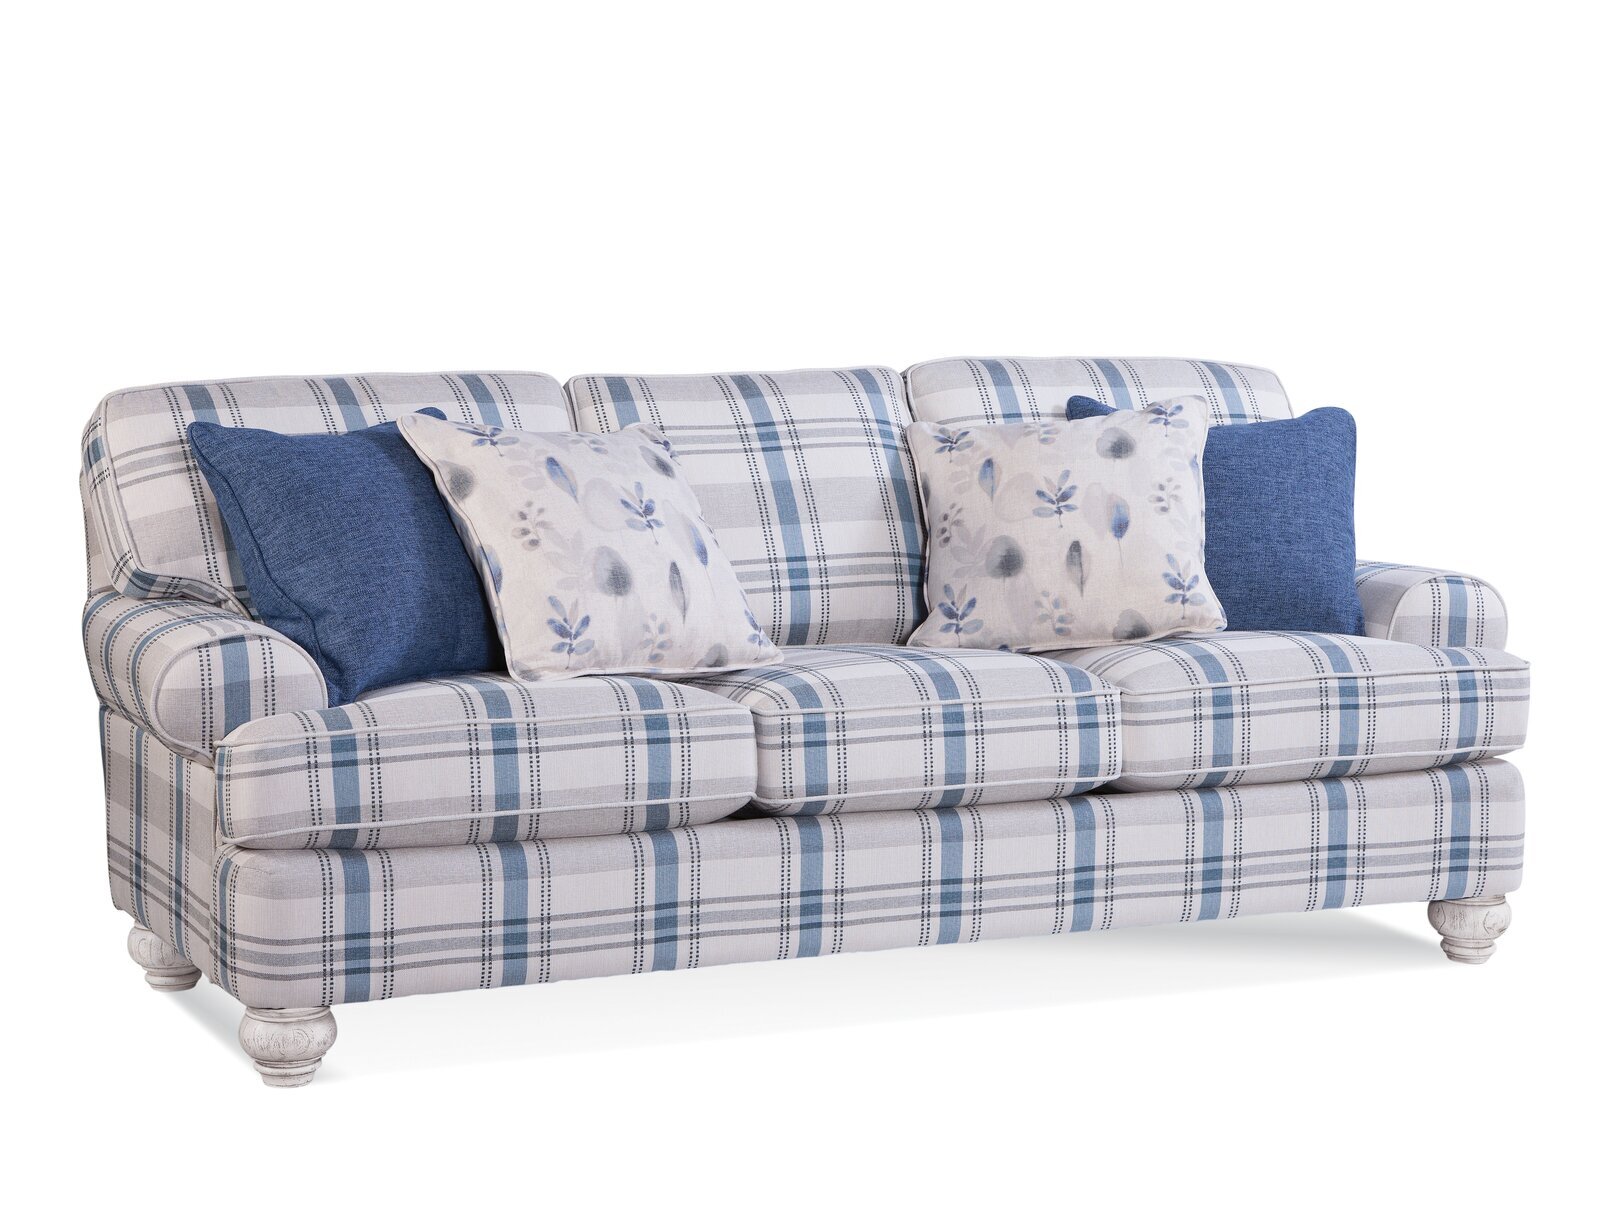 Plaid fabric sofas